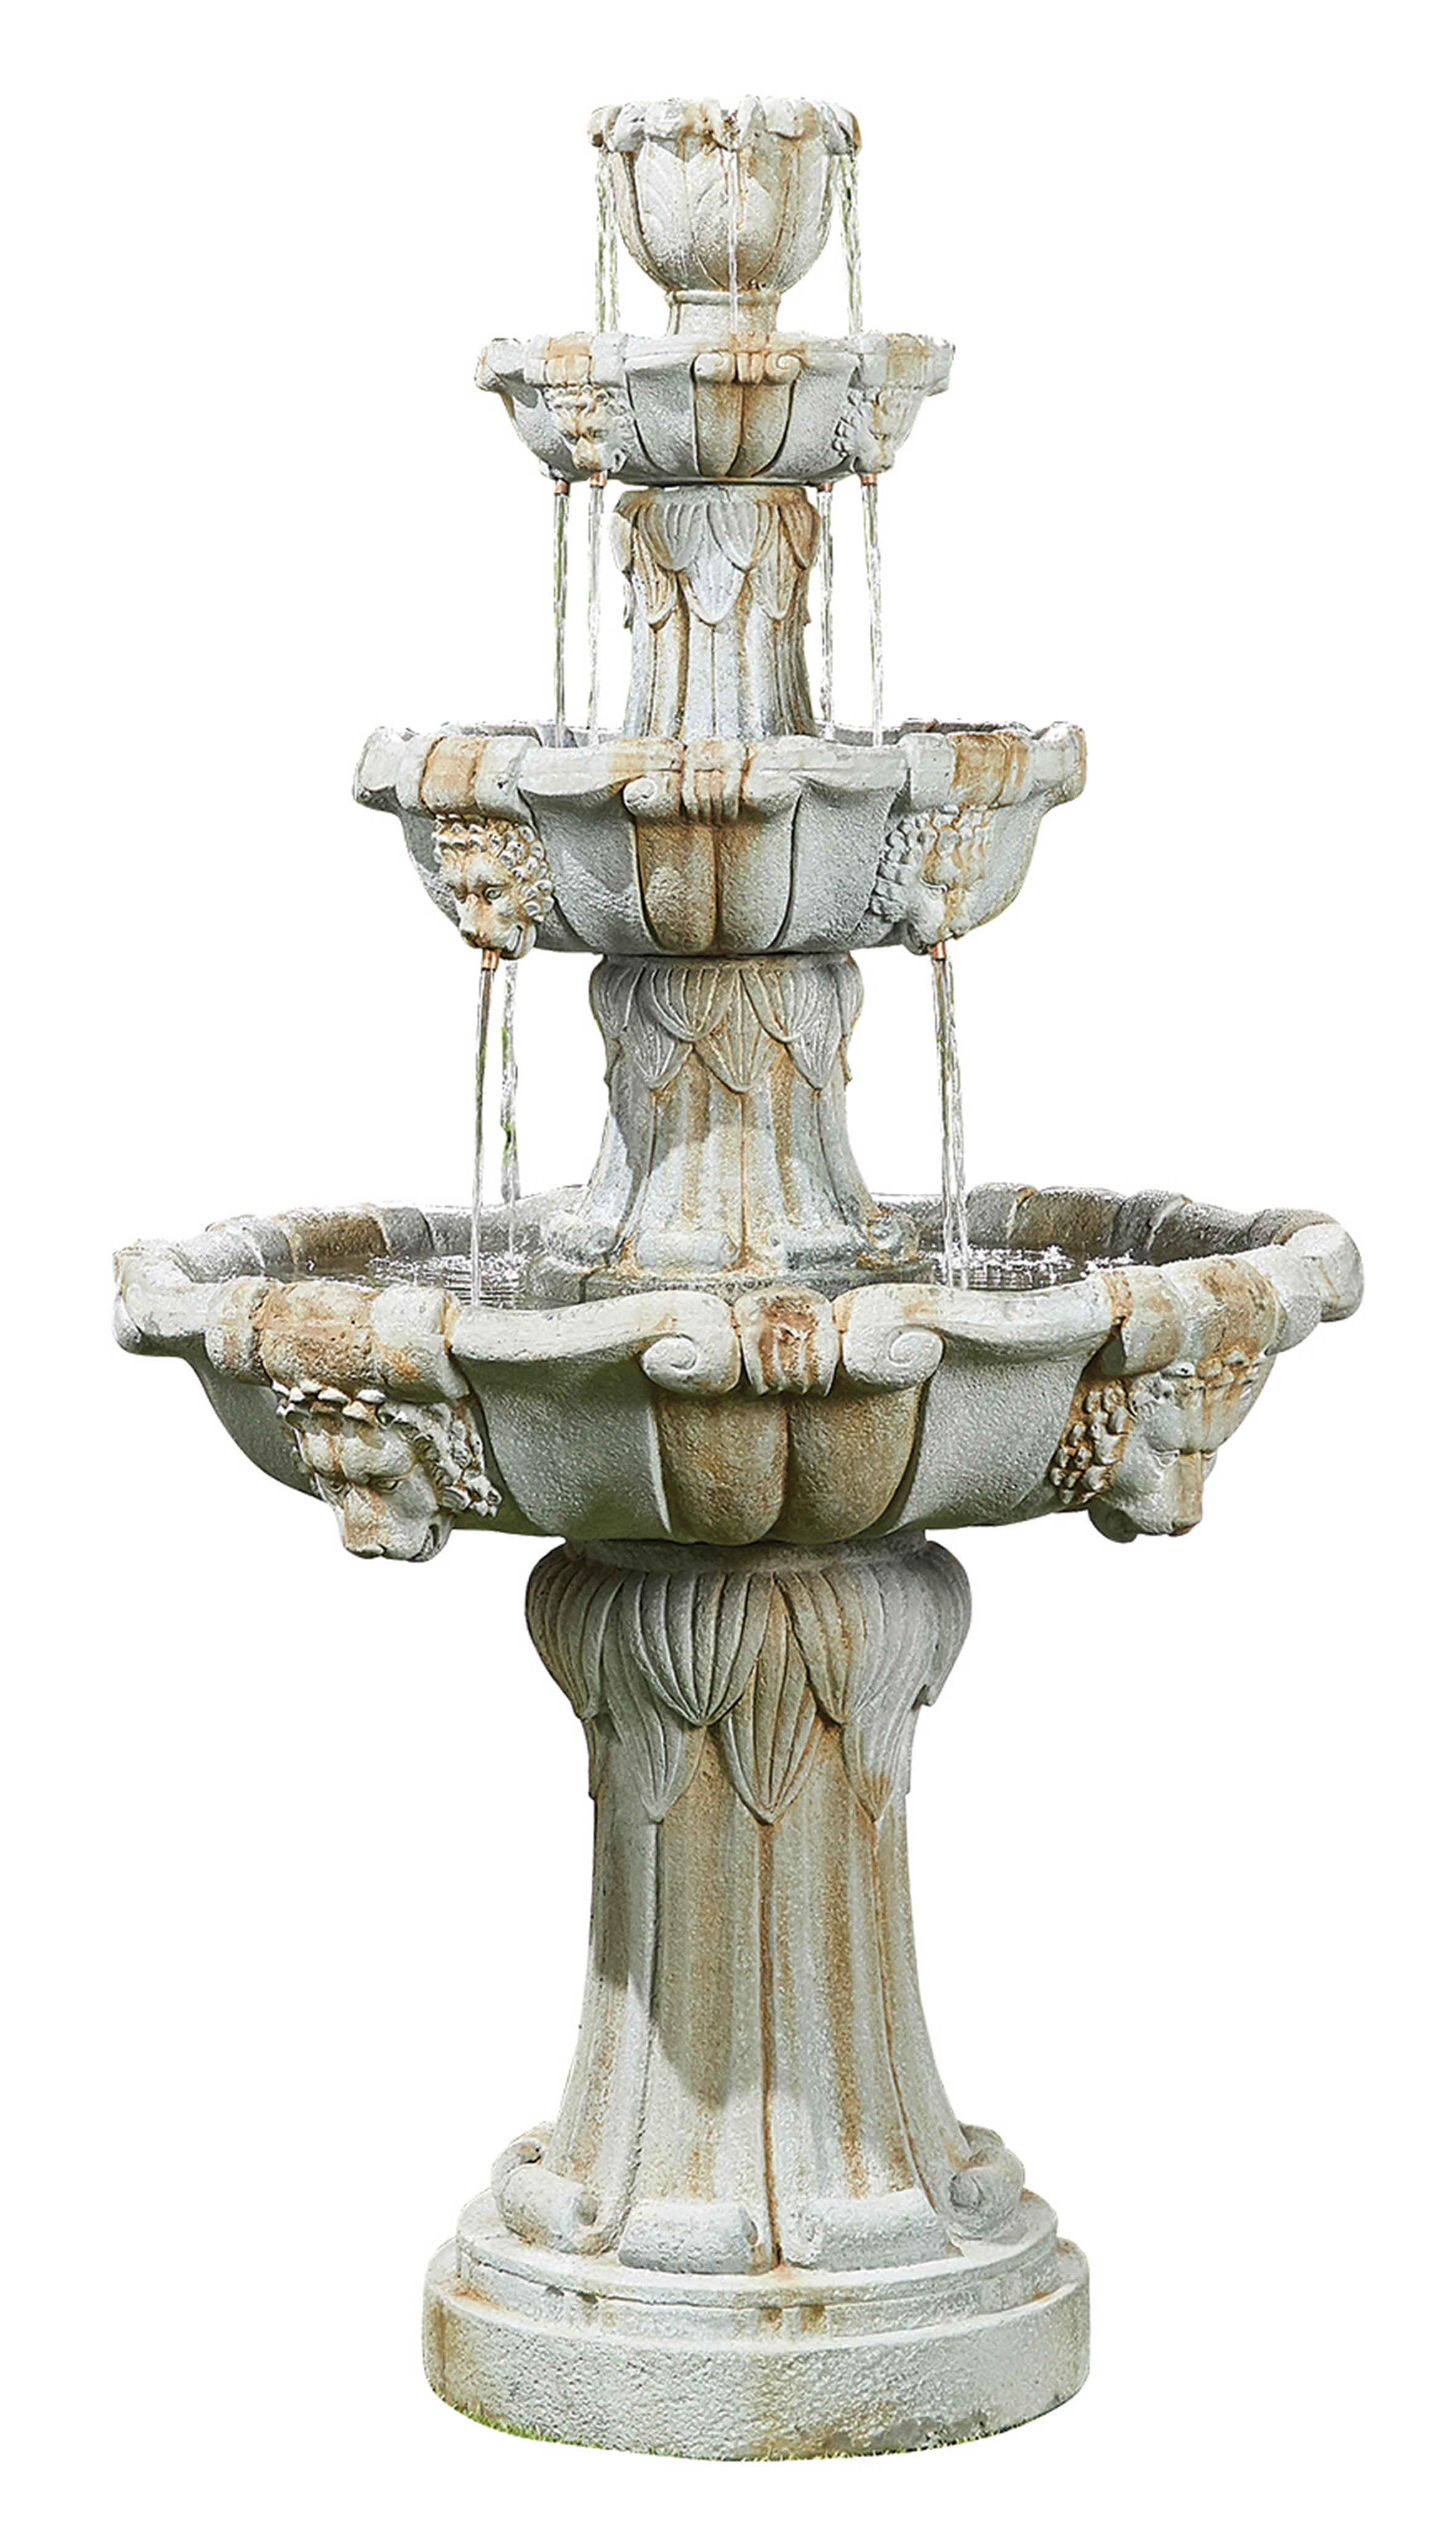 Kelkay Lioness Fountain Water Feature